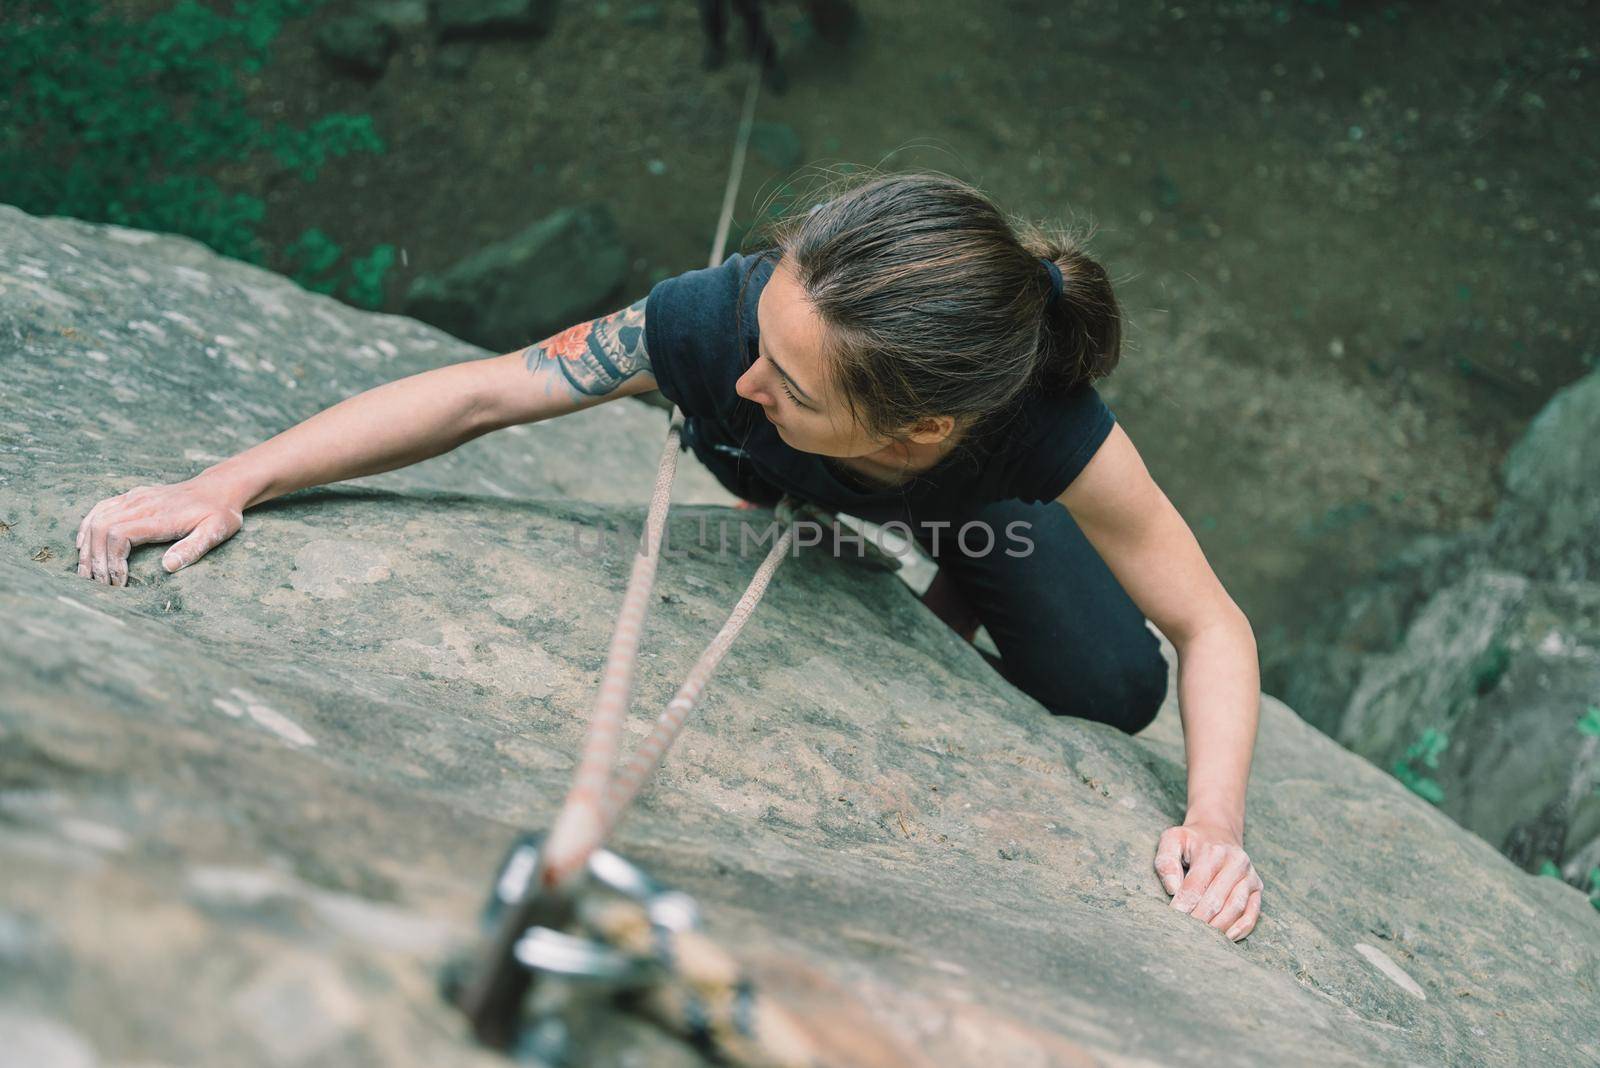 Woman climbing on stone rock, top view by alexAleksei